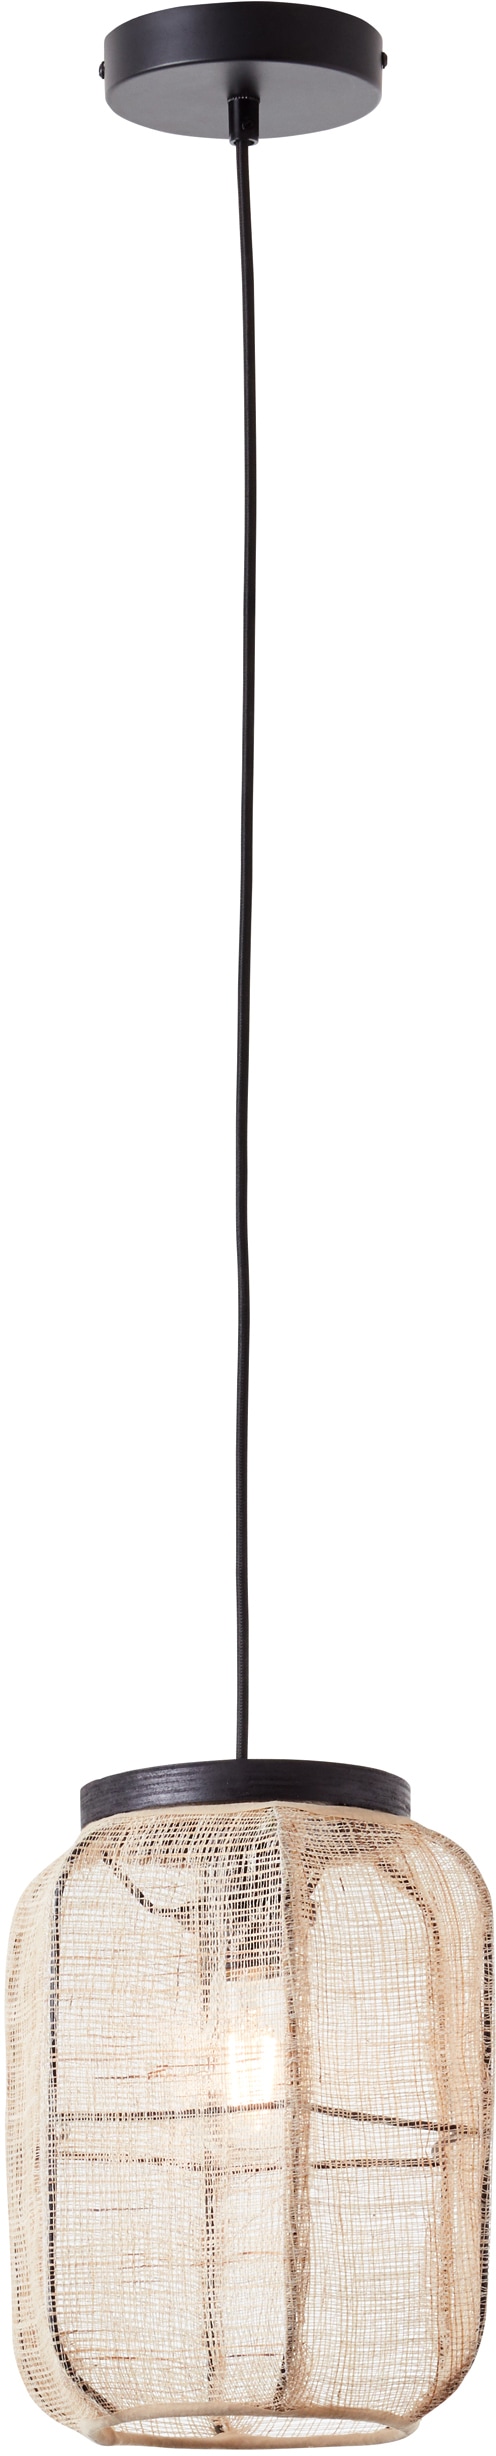 Home affaire Pendelleuchte »Rouez«, 1 flammig-flammig, Hängelampe mit 22cm Durchmesser, Schirm aus Textil und Holz